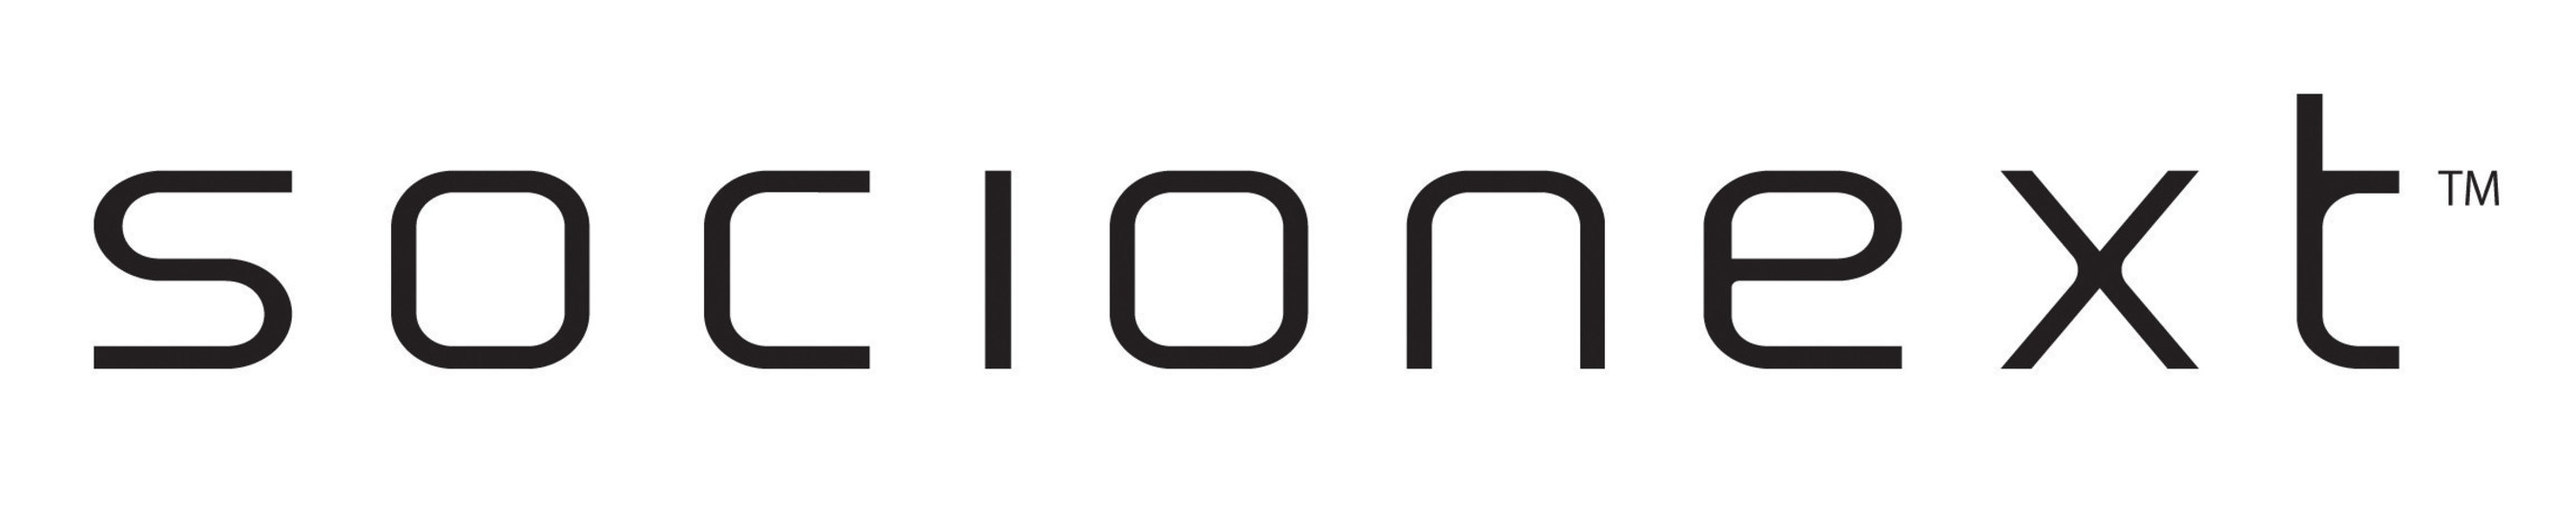 Socionext Inc. logo